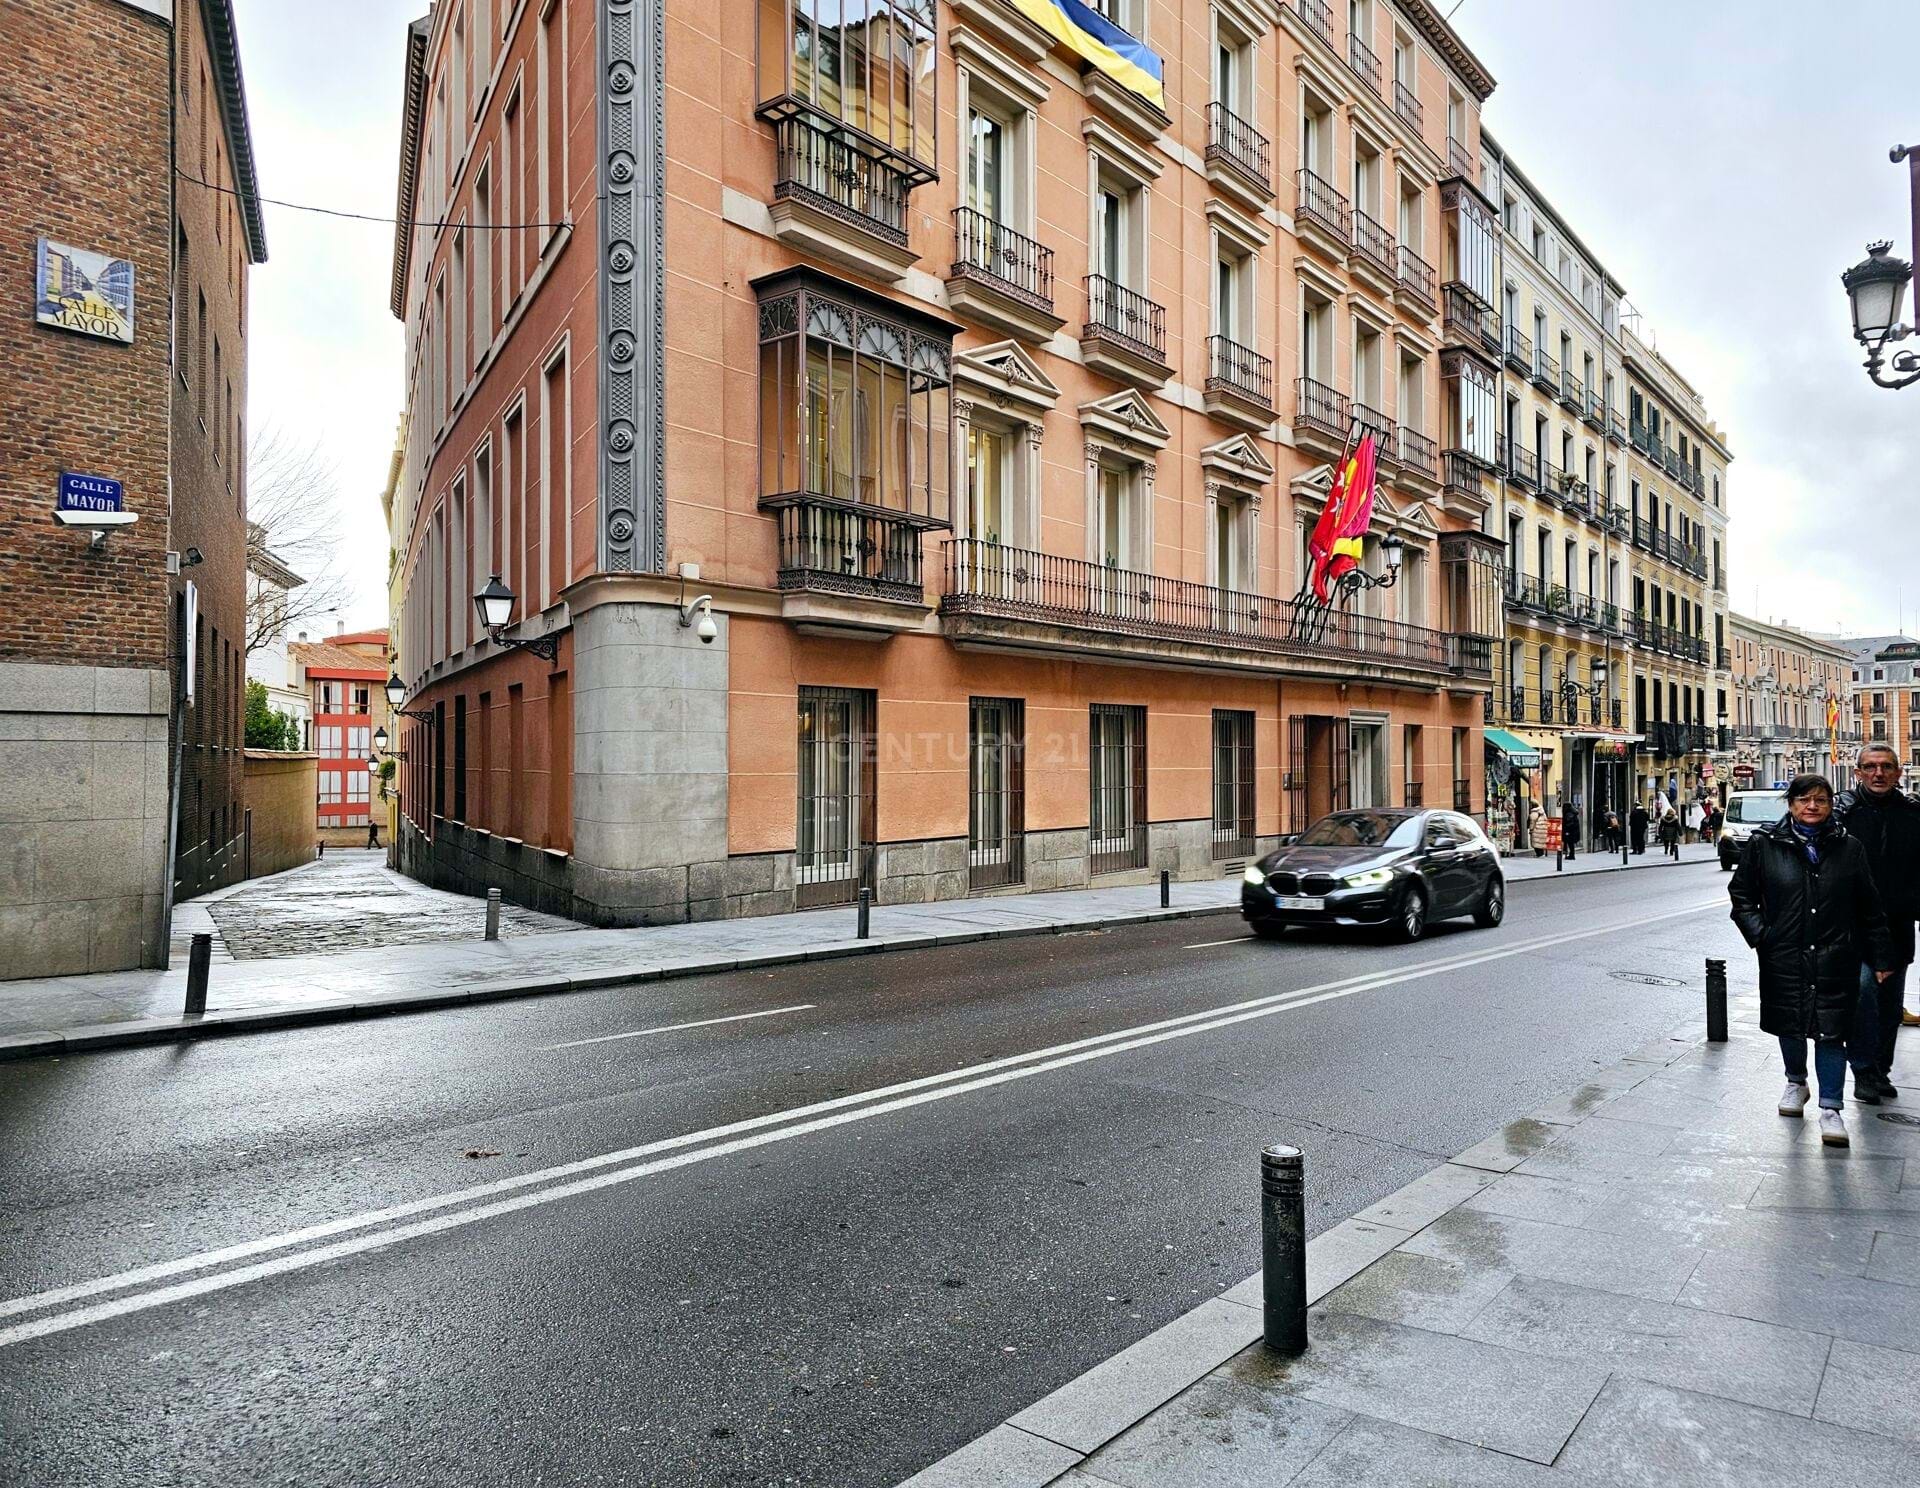  Madrid Community of Madrid